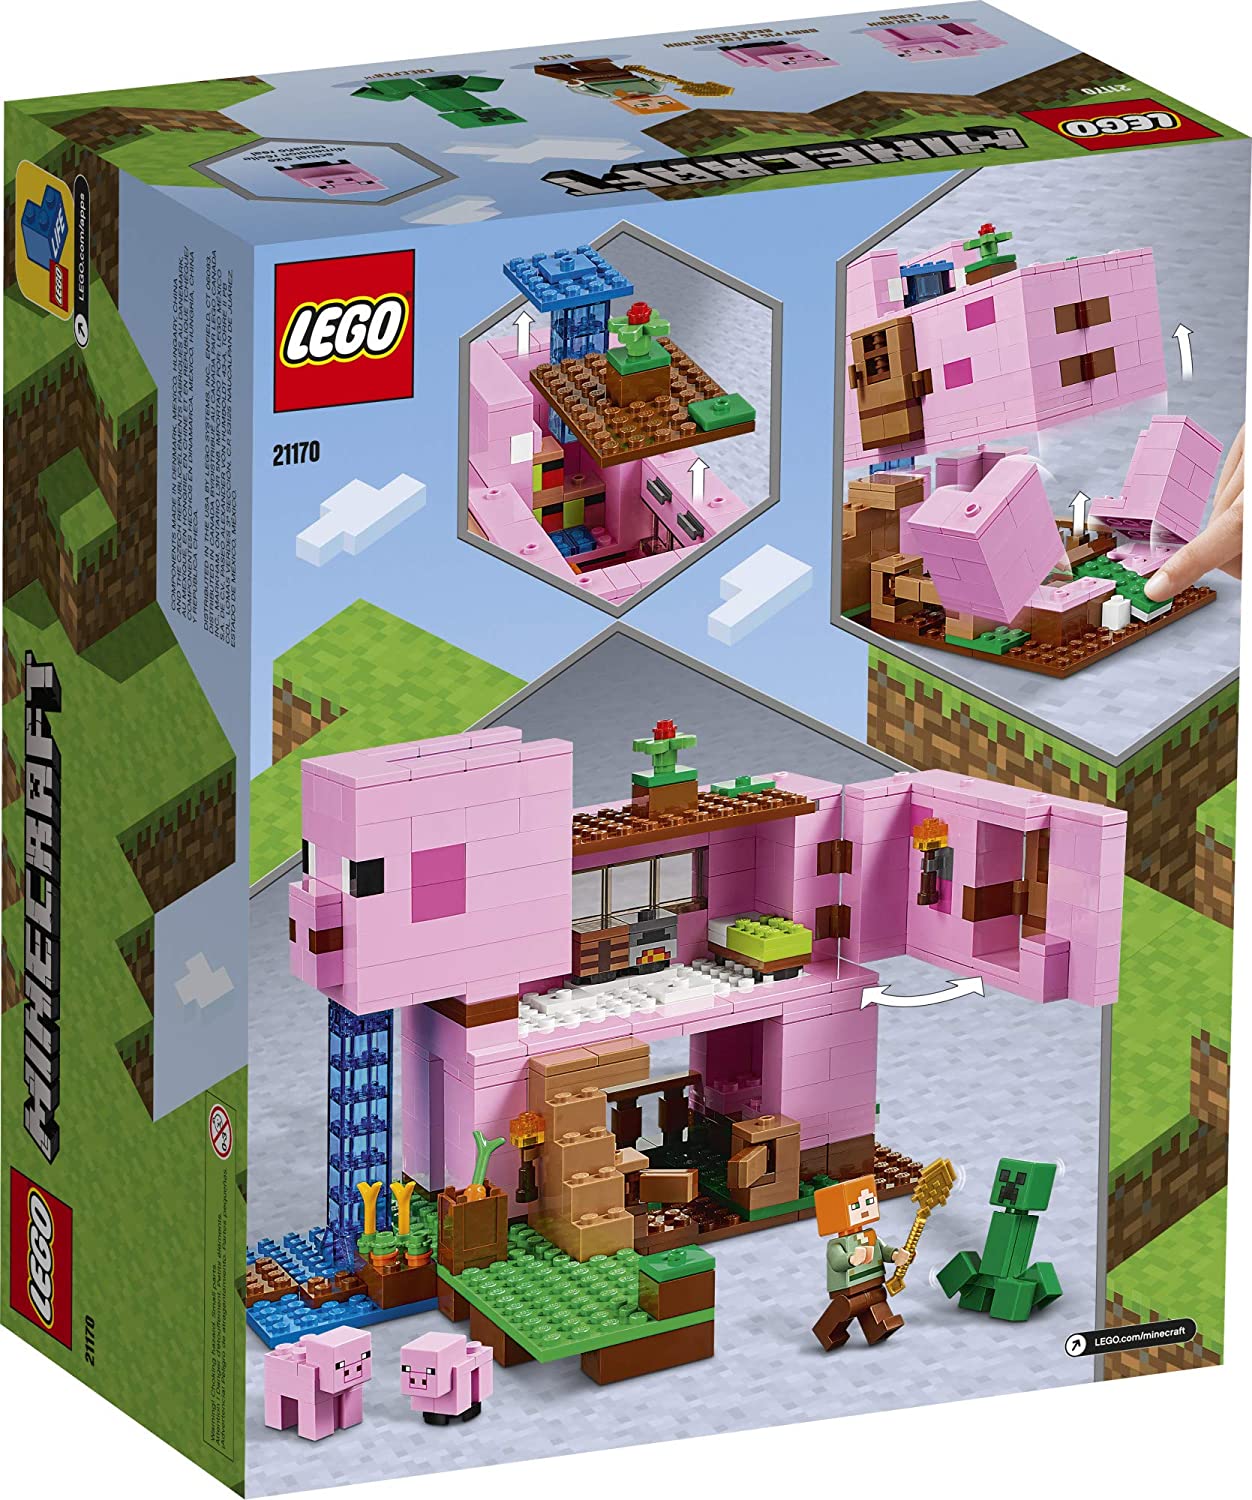 The New LEGO Minecraft The Pig House 21170 Đồ chơi Minecraft, bao gồm Alex,  dây leo và một ngôi nhà hình con lợn khổng lồ, mới ra mắt vào năm 2021 (490